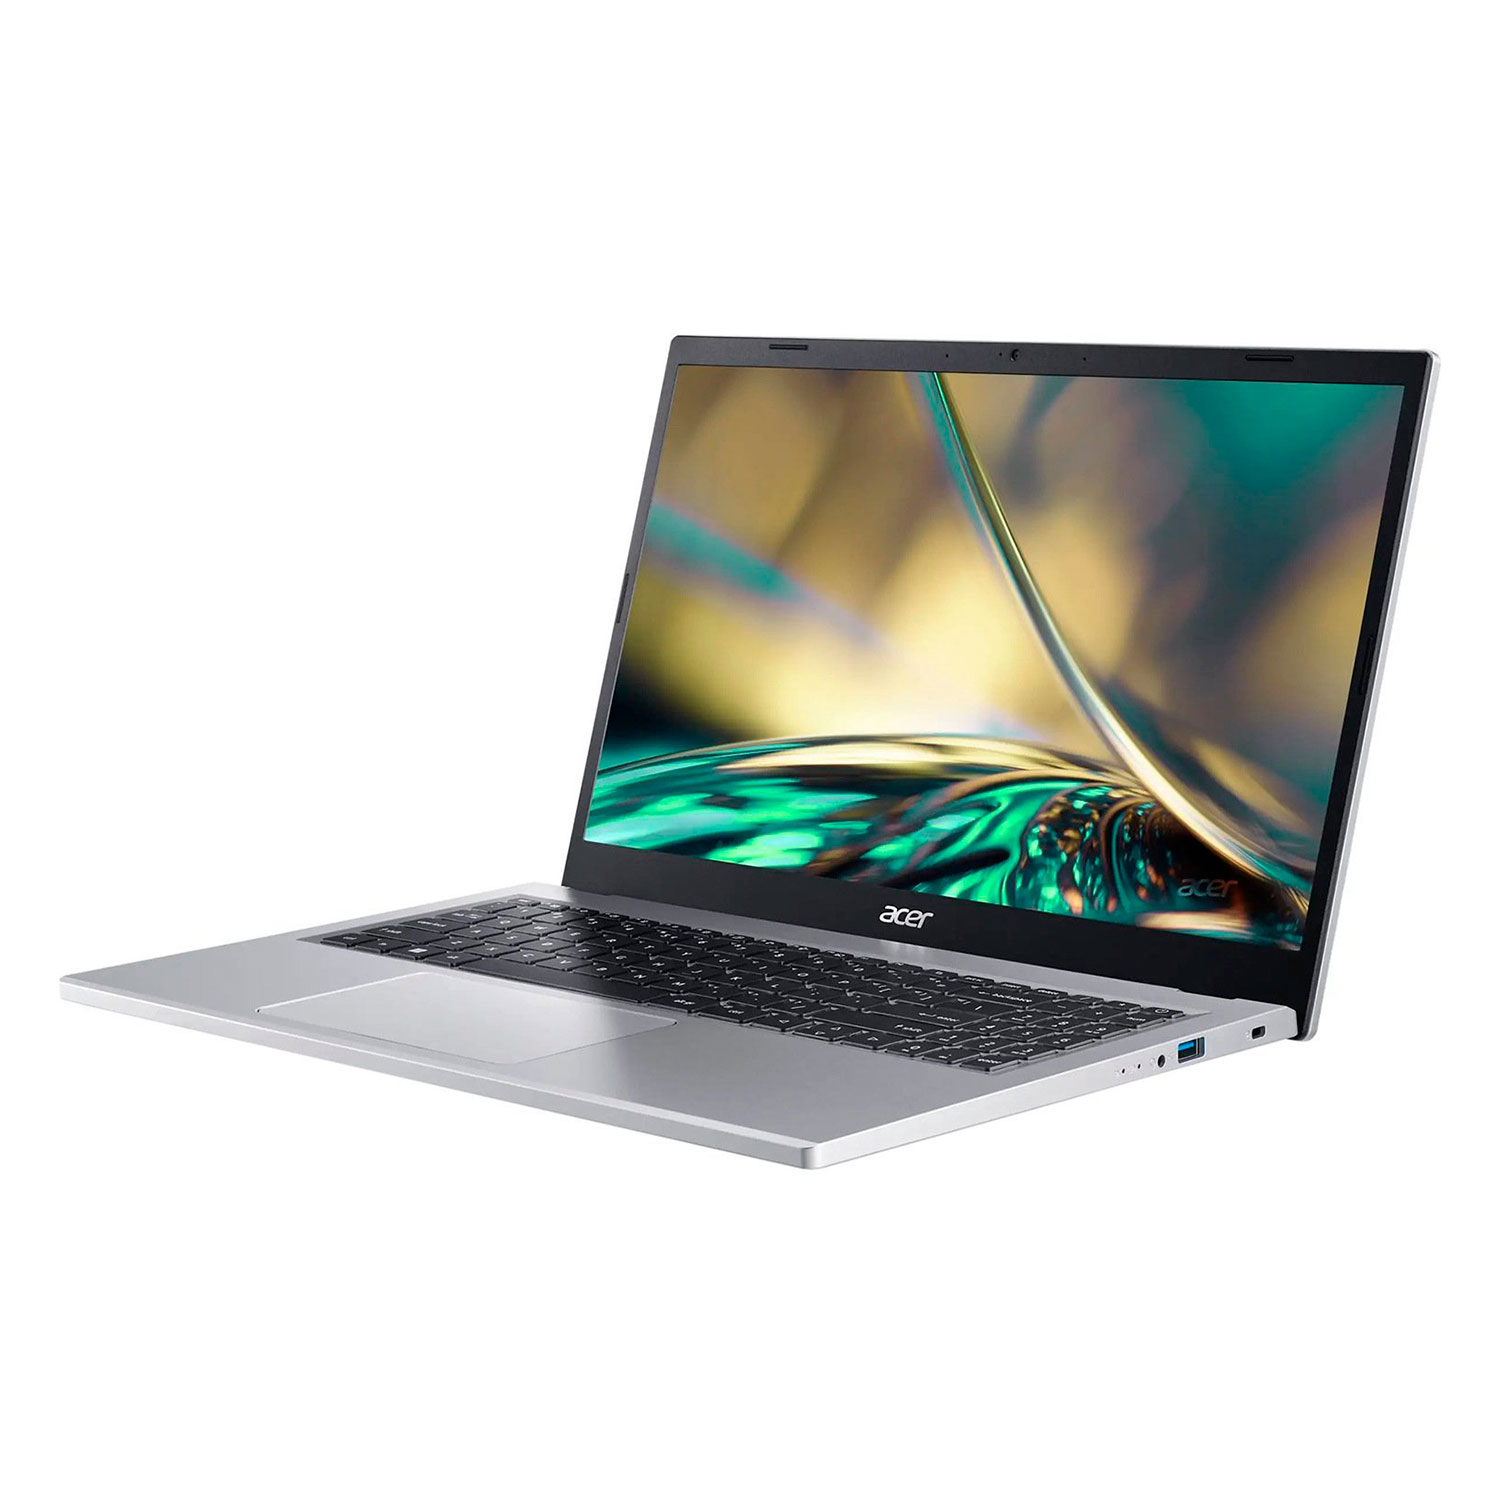 Notebook Acer A315-510P-378E 15.6" Intel Core i3-N305 512GB SSD 8GB RAM - Prata
